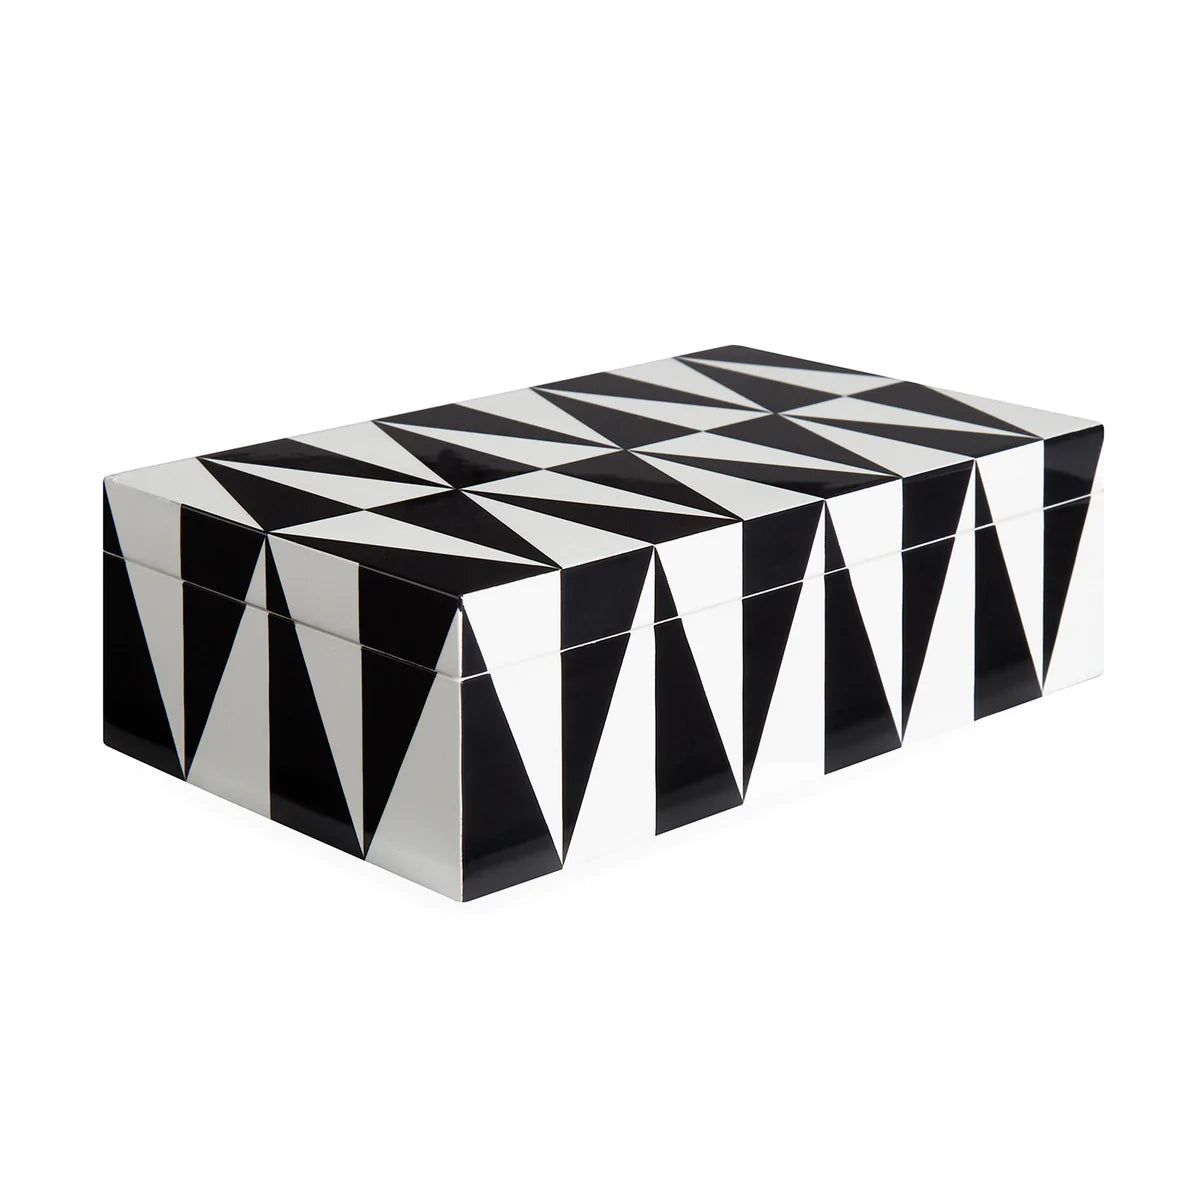 Medium Op Art Lacquer Box. Jonathan Adler 